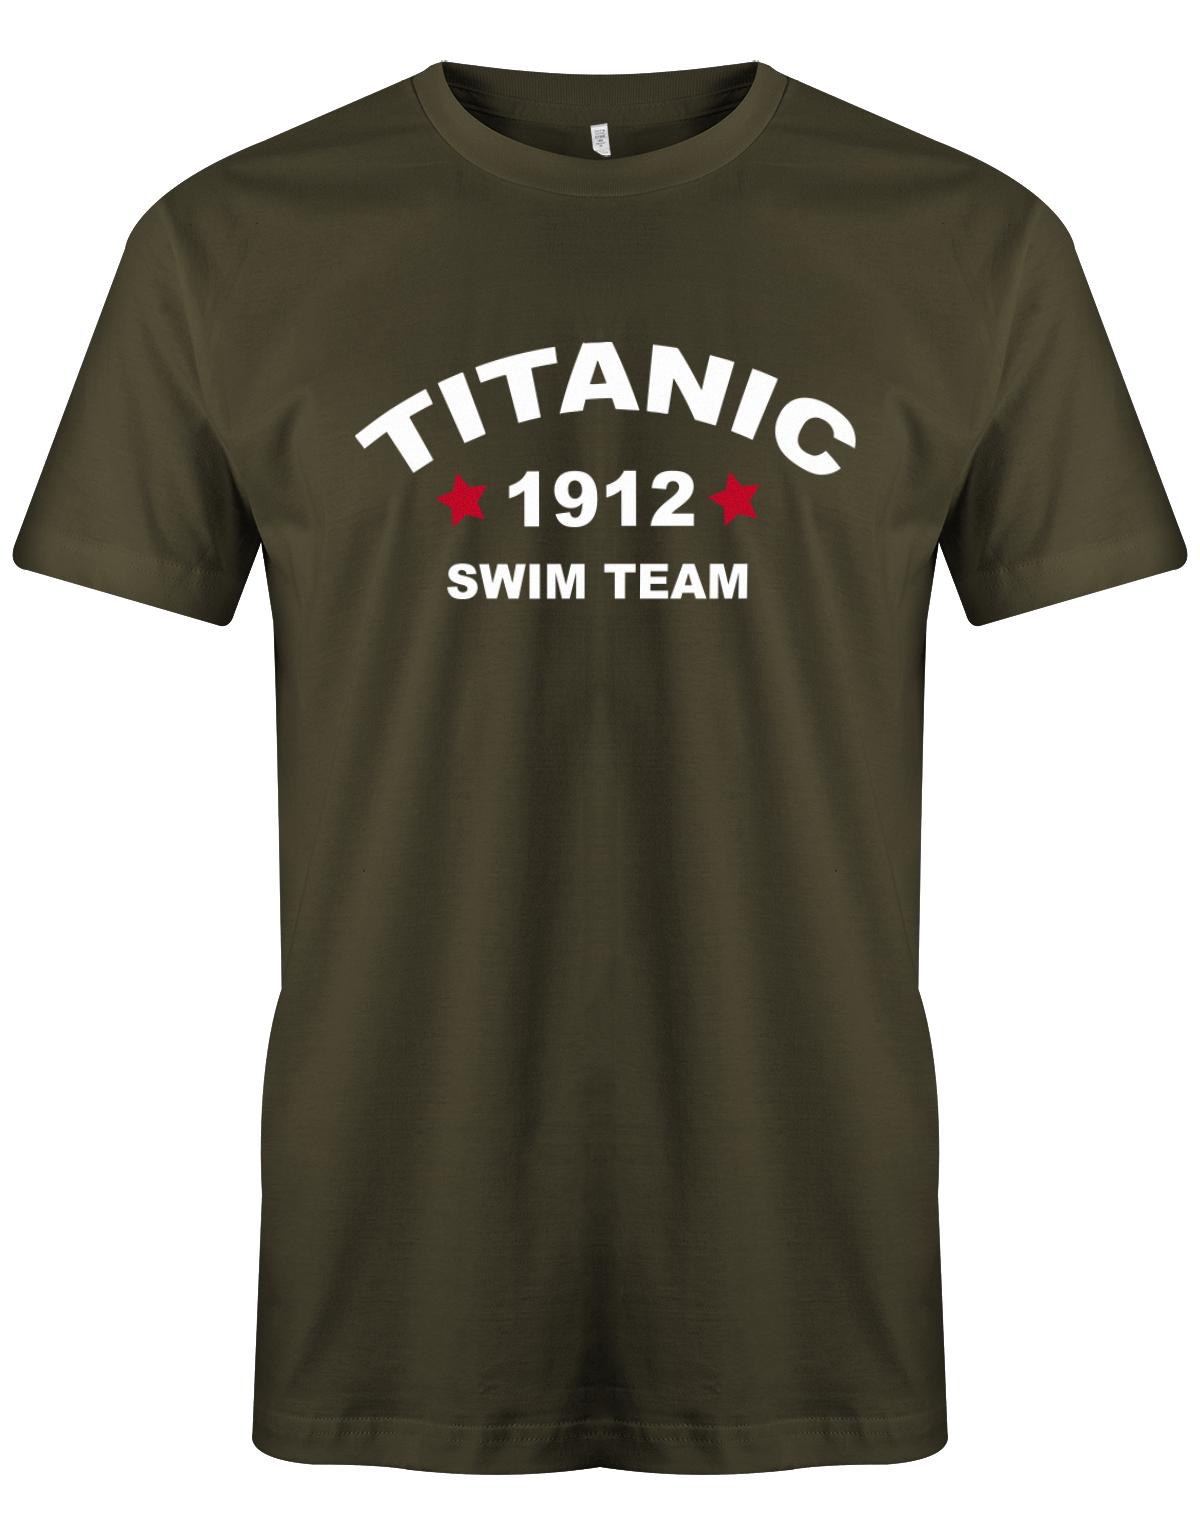 Titanic-1912-Swim-Team-Herren-Shirt-Army